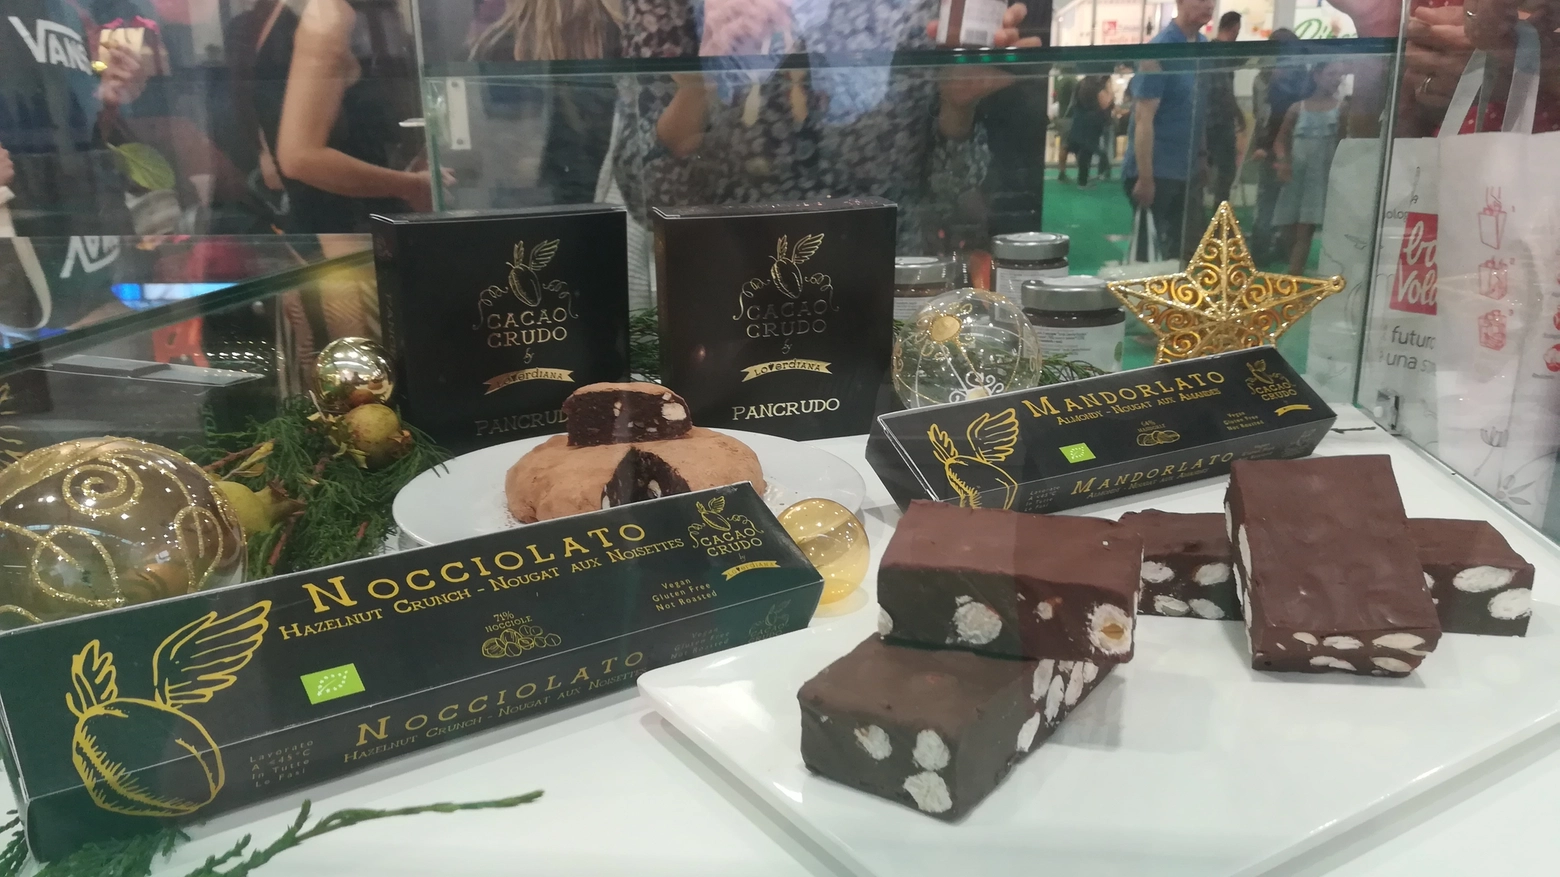 Alcuni prodotti di Cacao Crudo